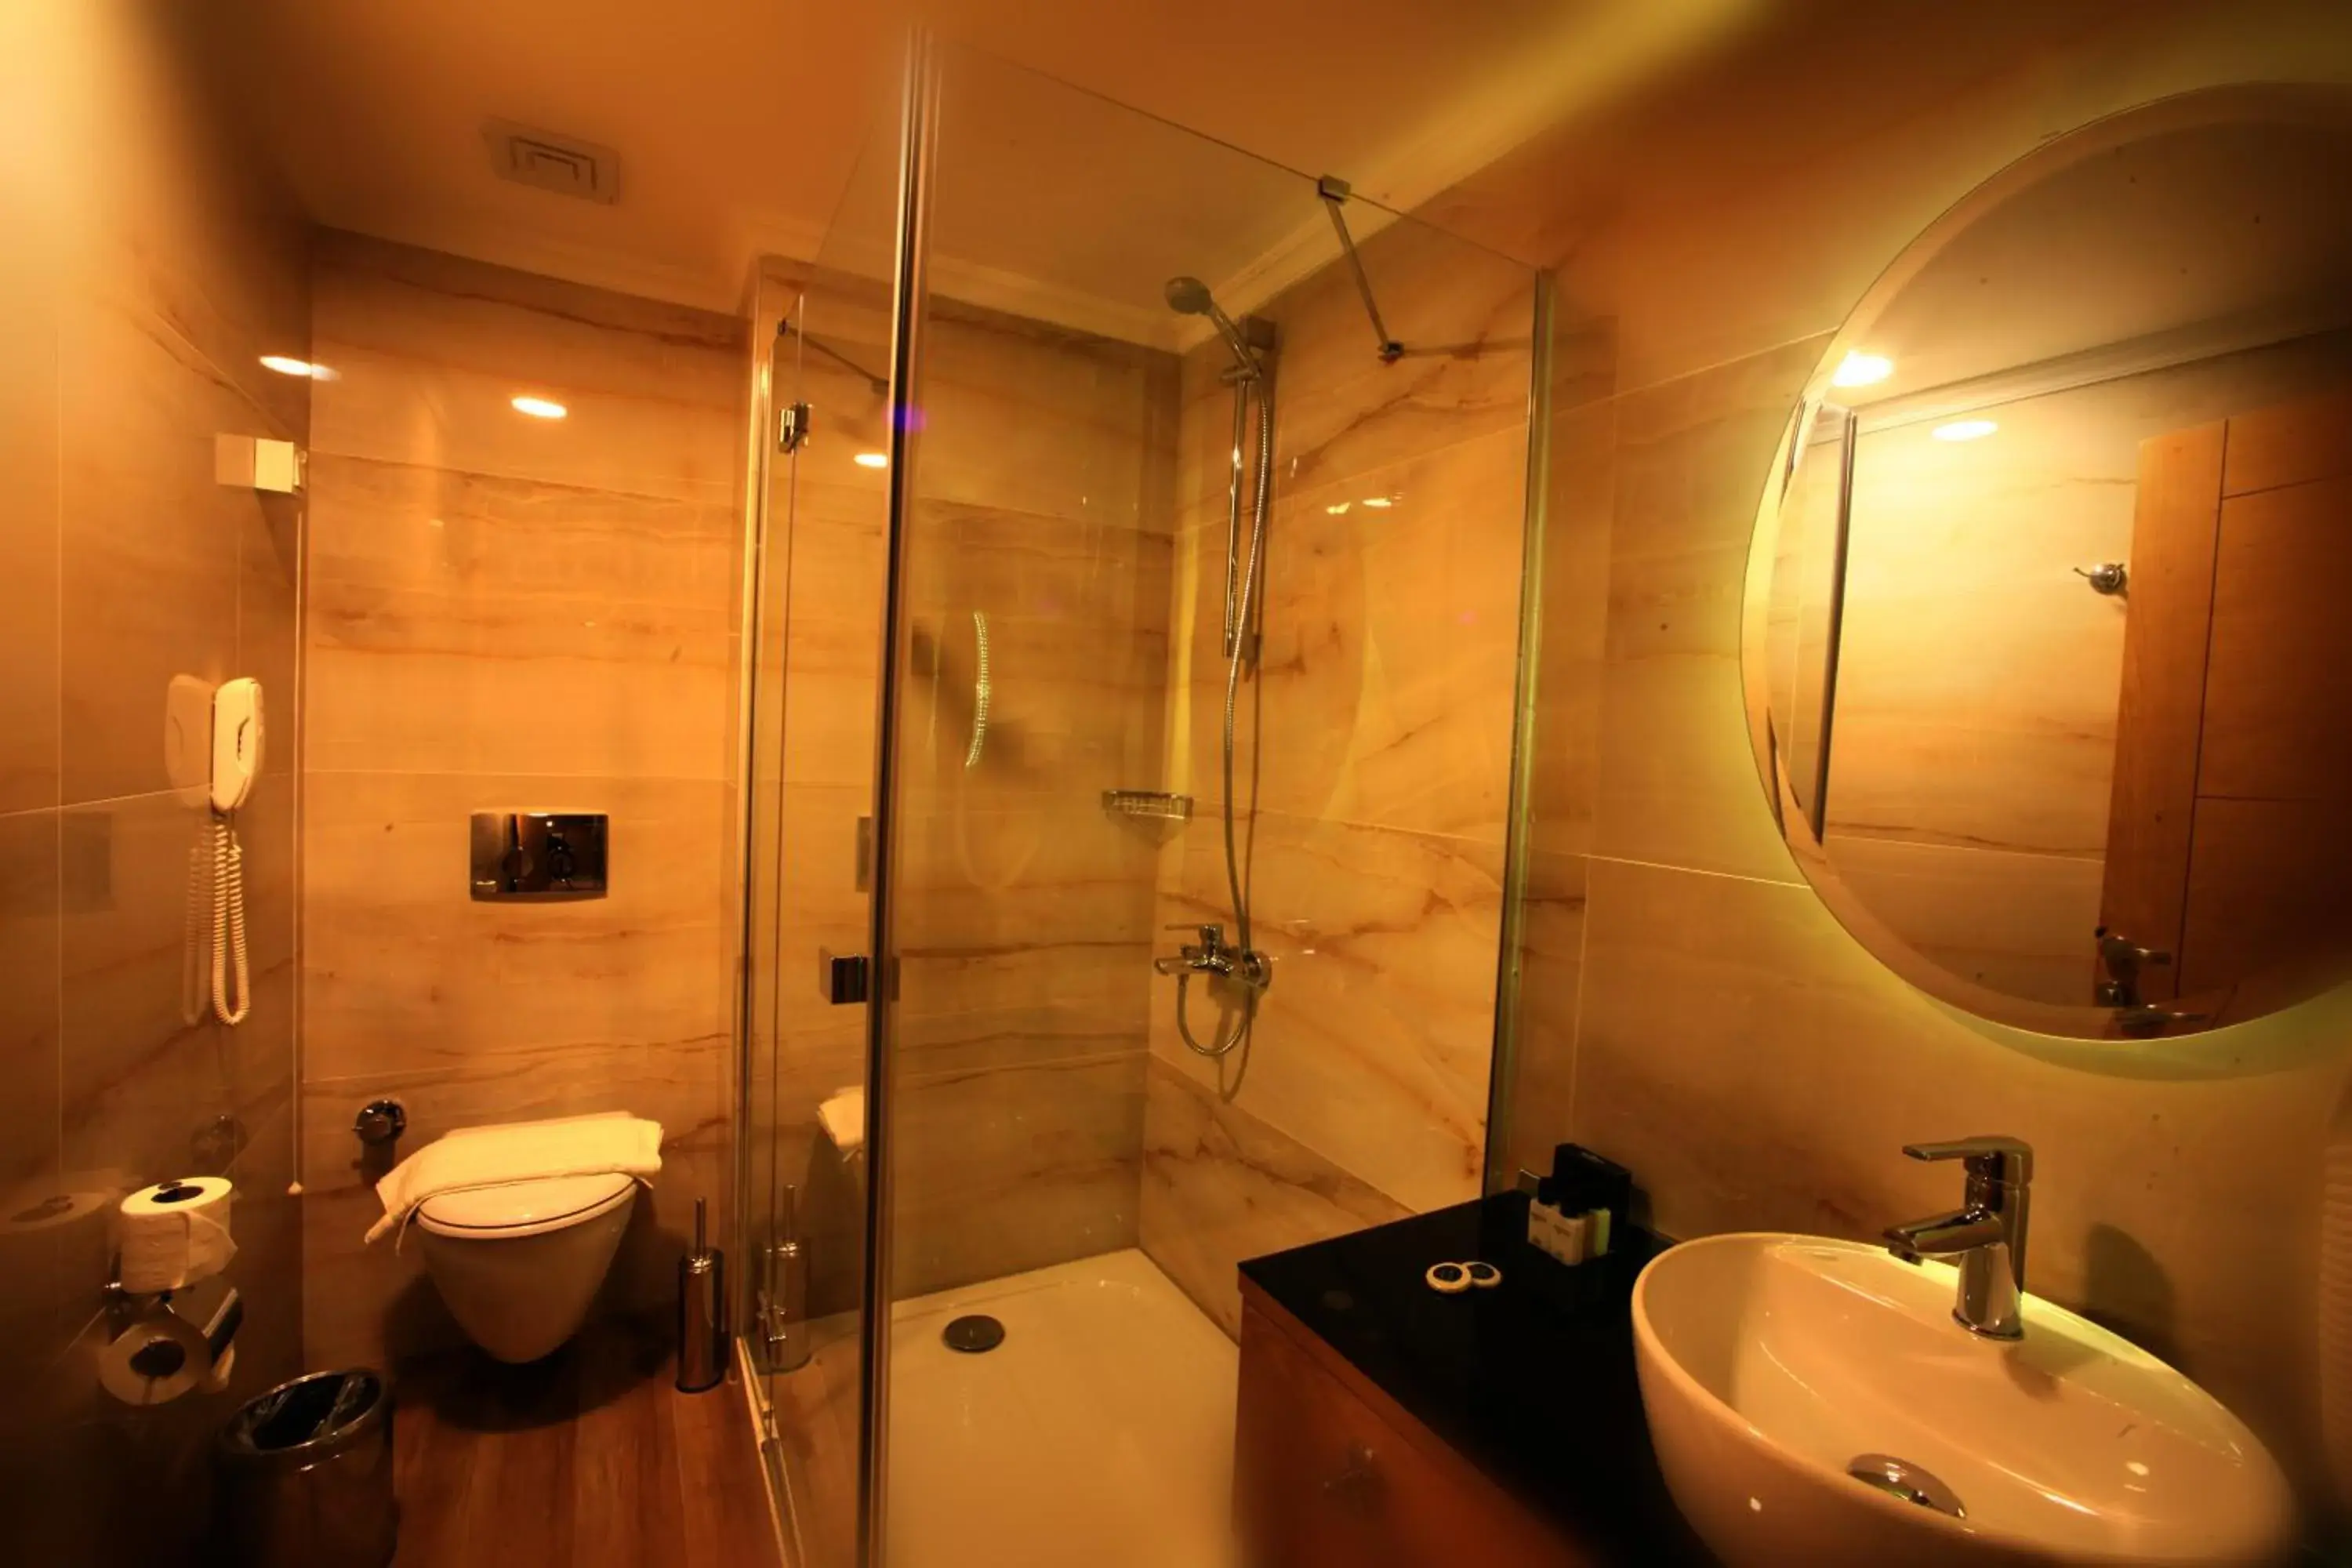 Toilet, Bathroom in Beyoglu MLS Hotel